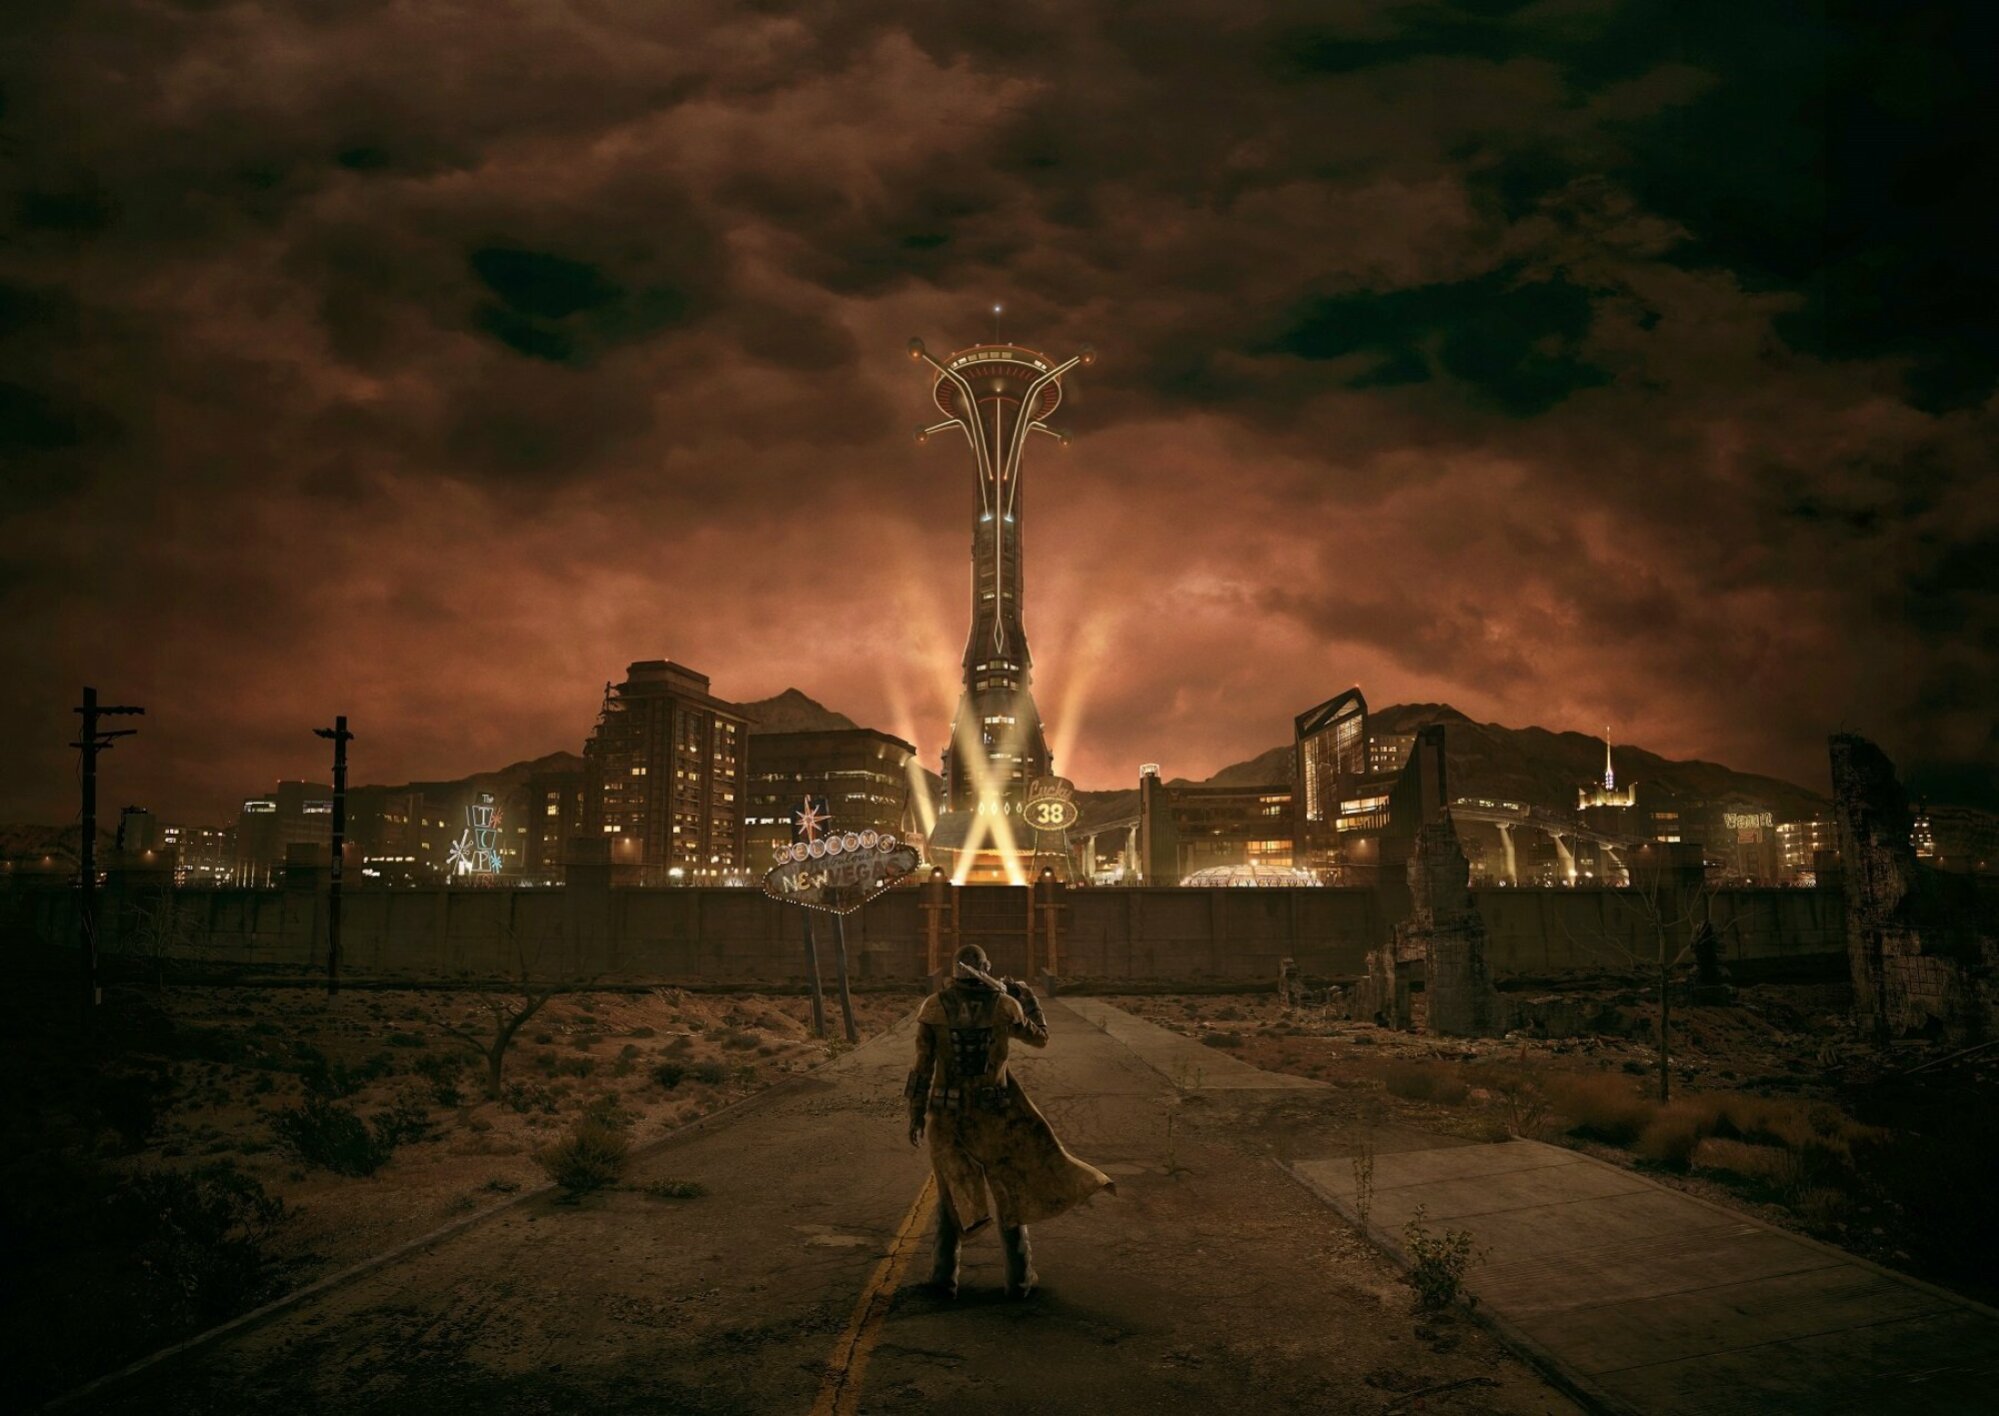 Une silhouette vêtue de vêtements en lambeaux se dirige vers une tour rougeoyante avec un phare lumineux sous un ciel orageux dans un paysage urbain désolé et post-apocalyptique.